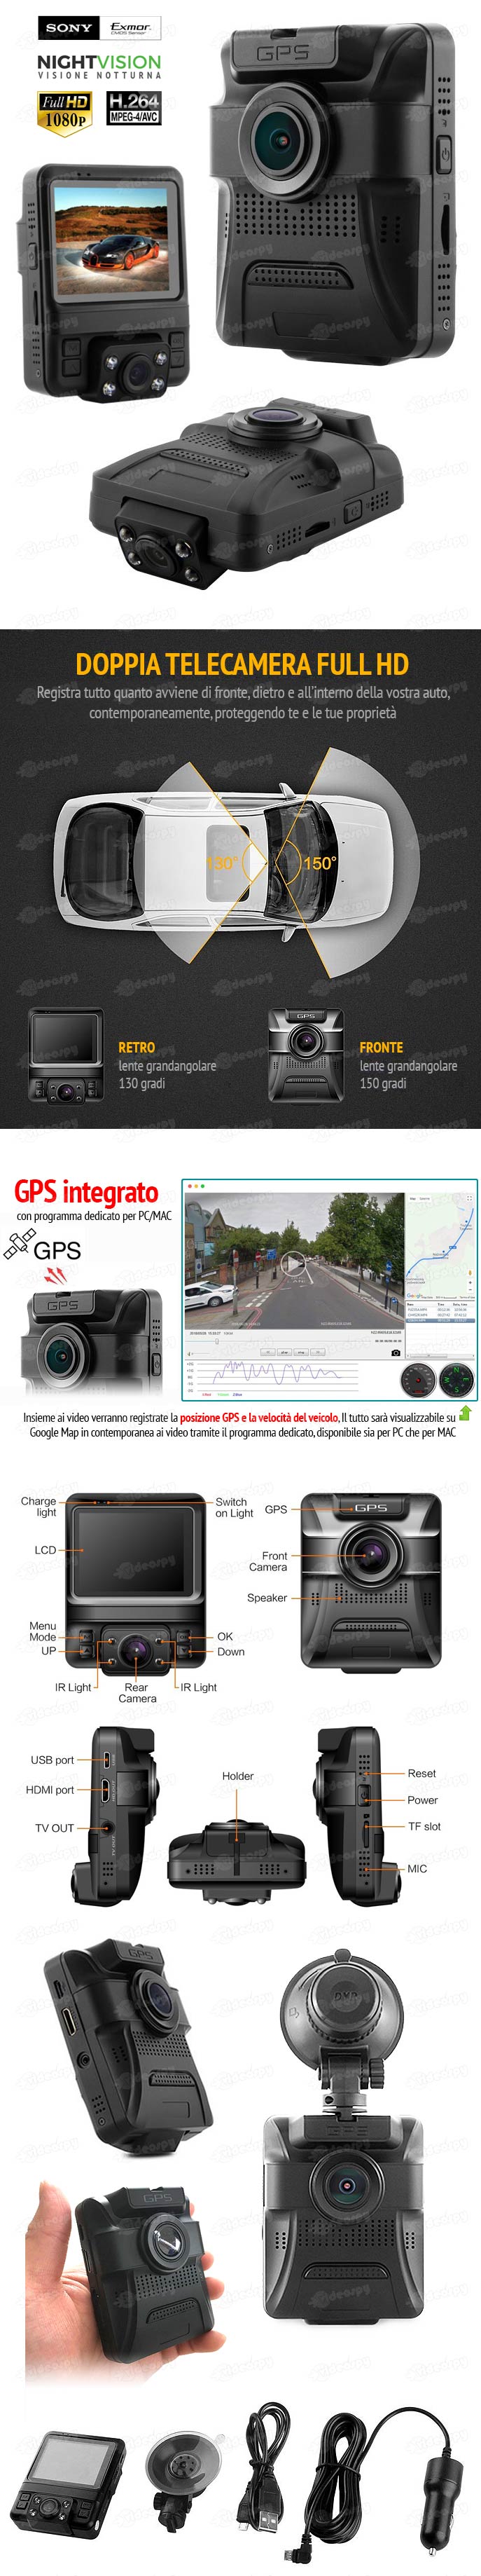 Telecamera per auto con GPS e doppio obiettivo fronte e retro VSX4001